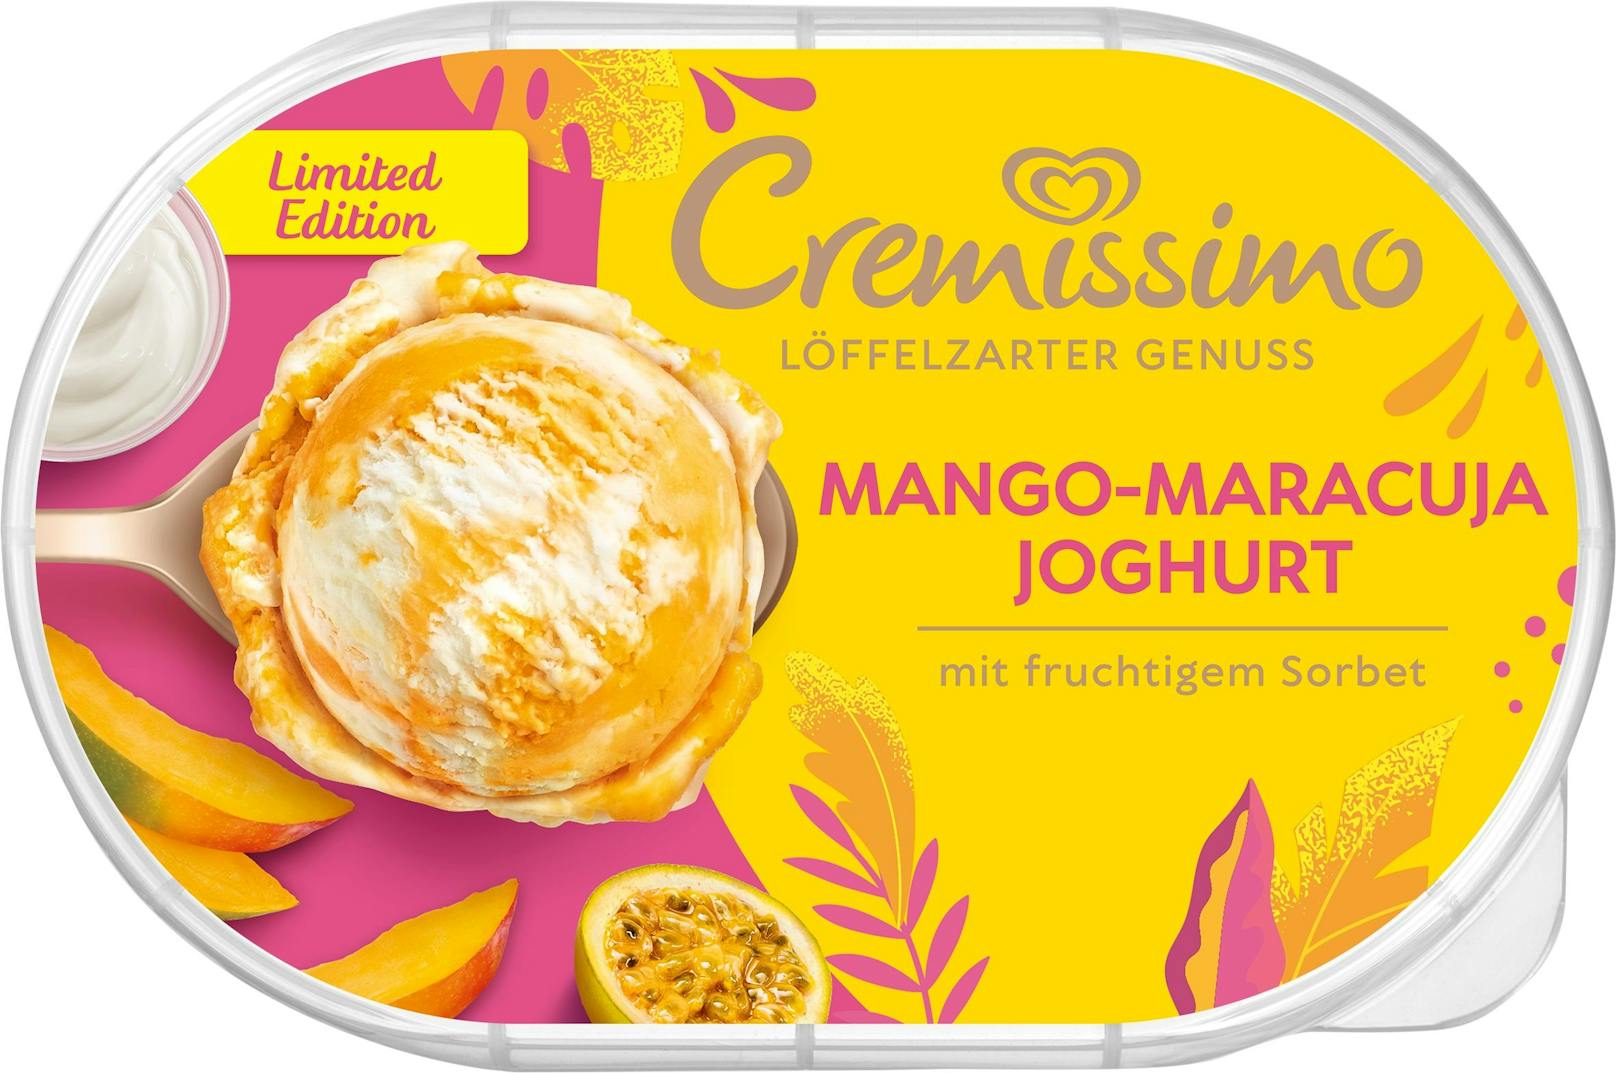 Neue Sorte "Mango-Maracuja-Joghurt" von Cremissimo